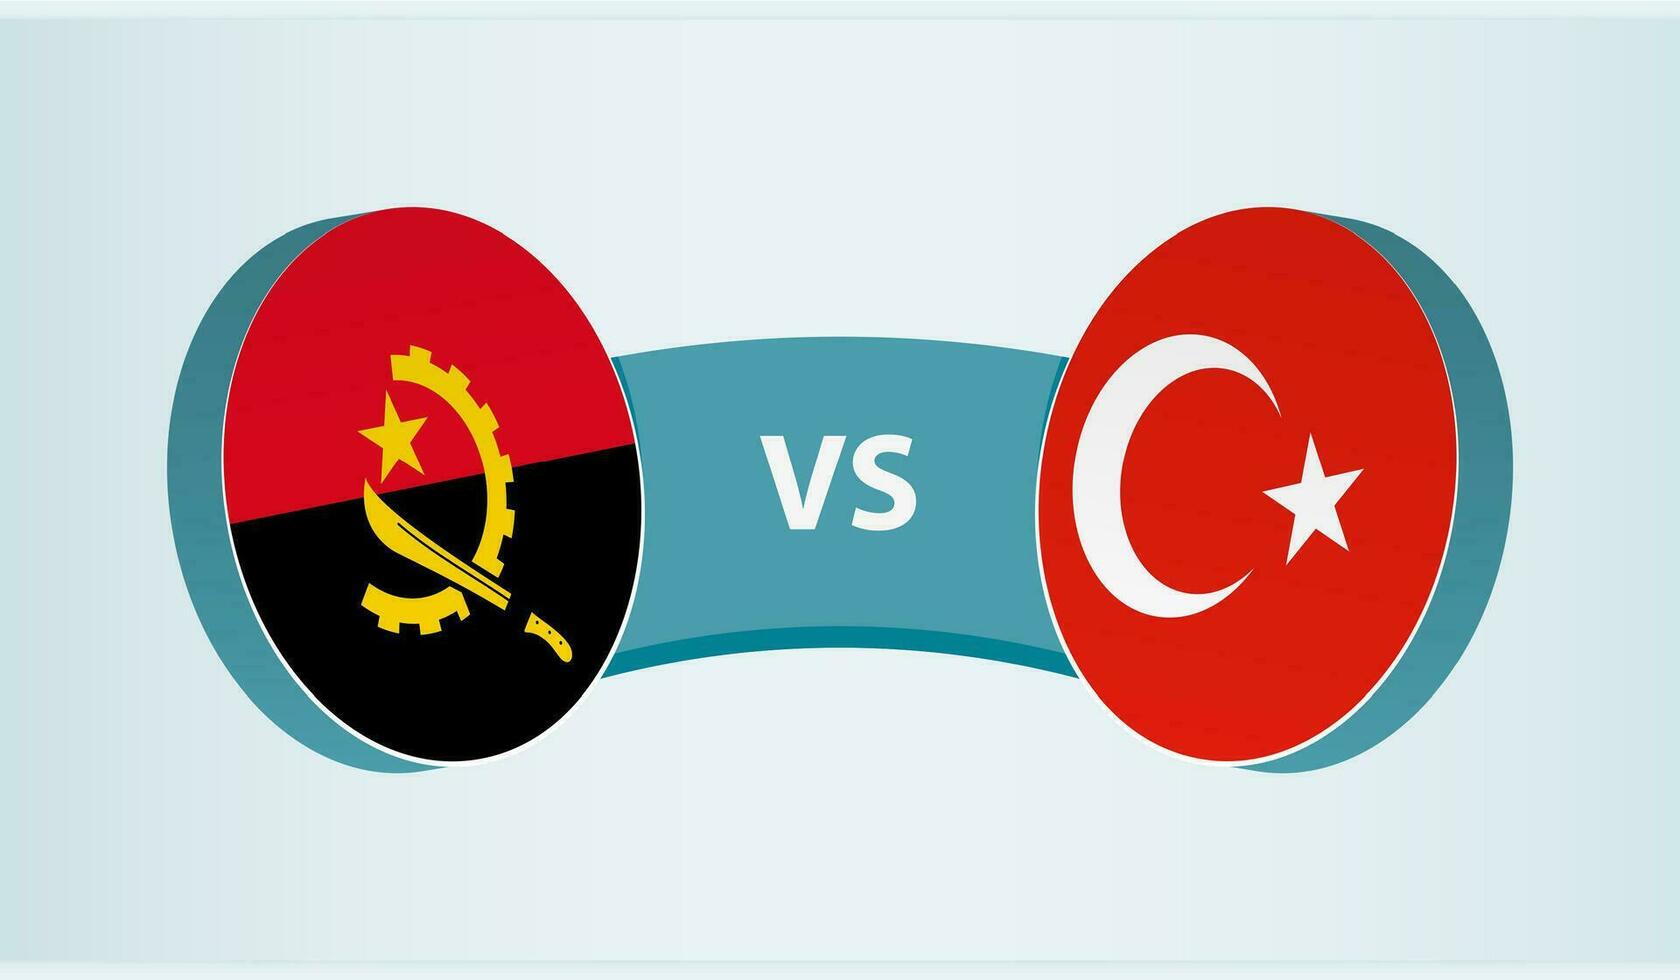 angola contre Turquie, équipe des sports compétition concept. vecteur